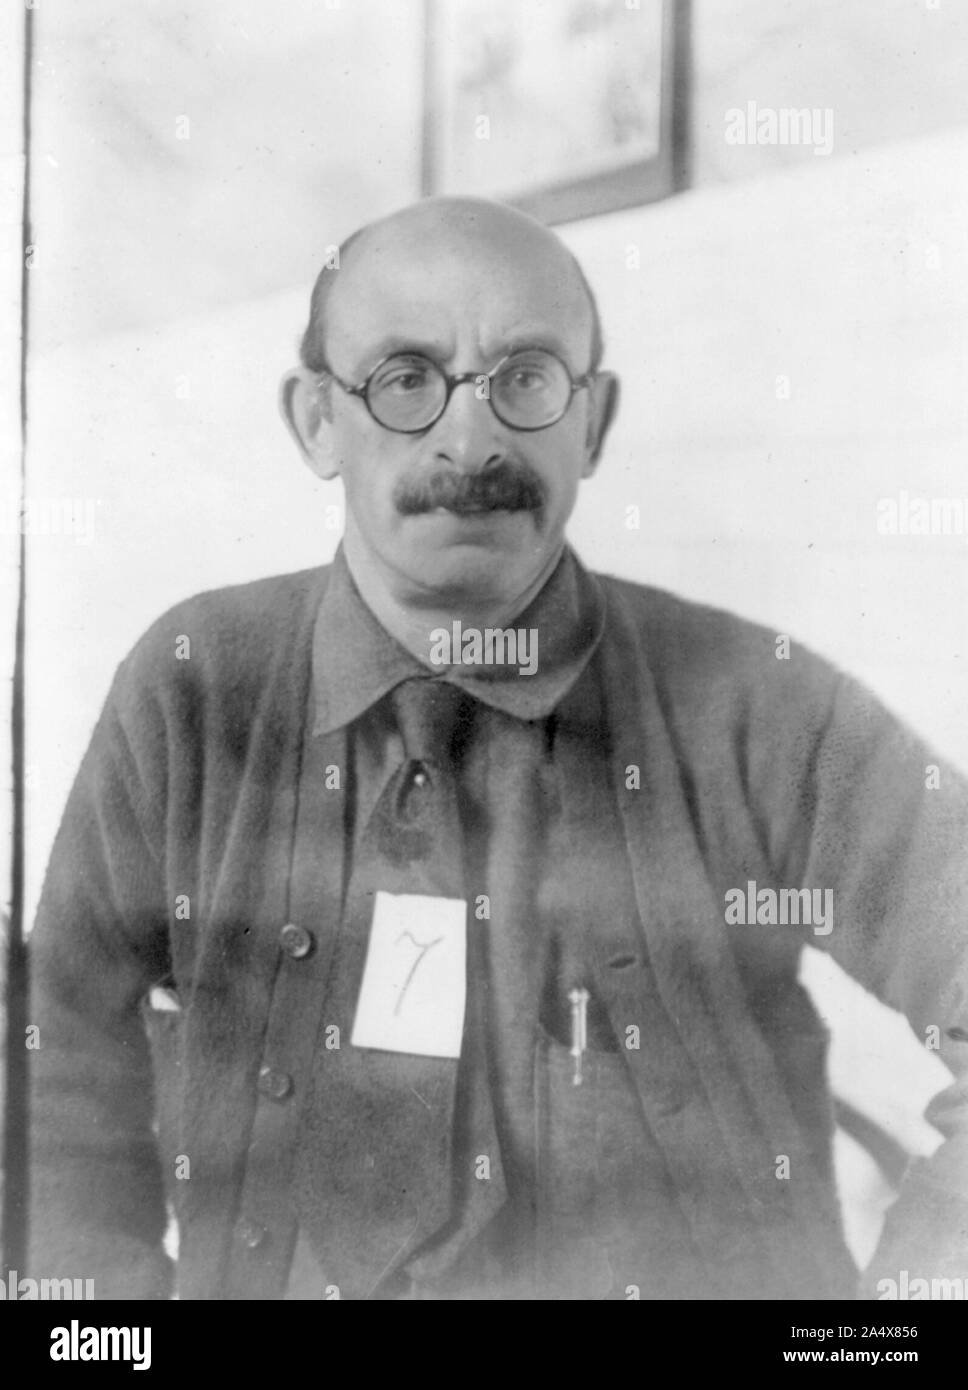 Alexander Berkman (1870-1936) russischer politischer Aktivist, der war ein führendes Mitglied der anarchistischen Bewegung. Dargestellt im Jahre 1919, am Vorabend seiner Abschiebung Stockfoto